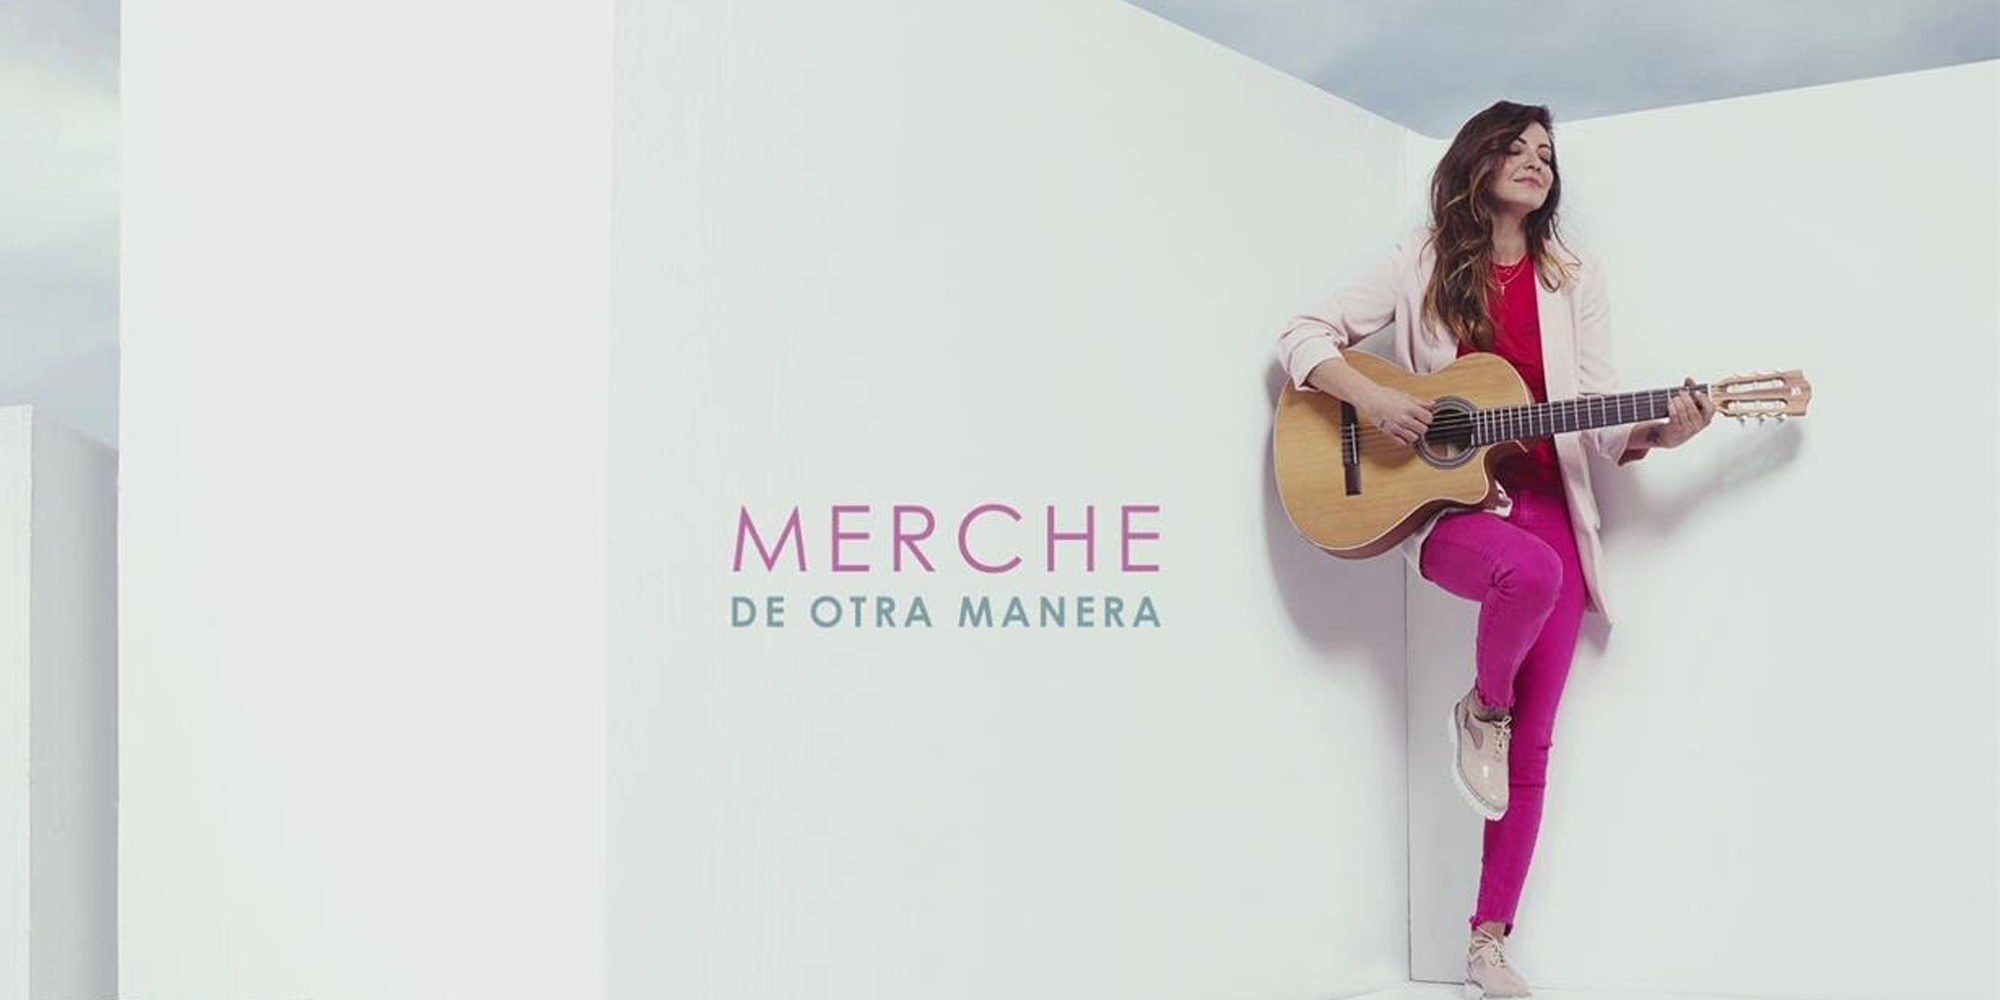 Merche comienza su nueva gira 'De otra manera' el próximo 6 de marzo en Madrid